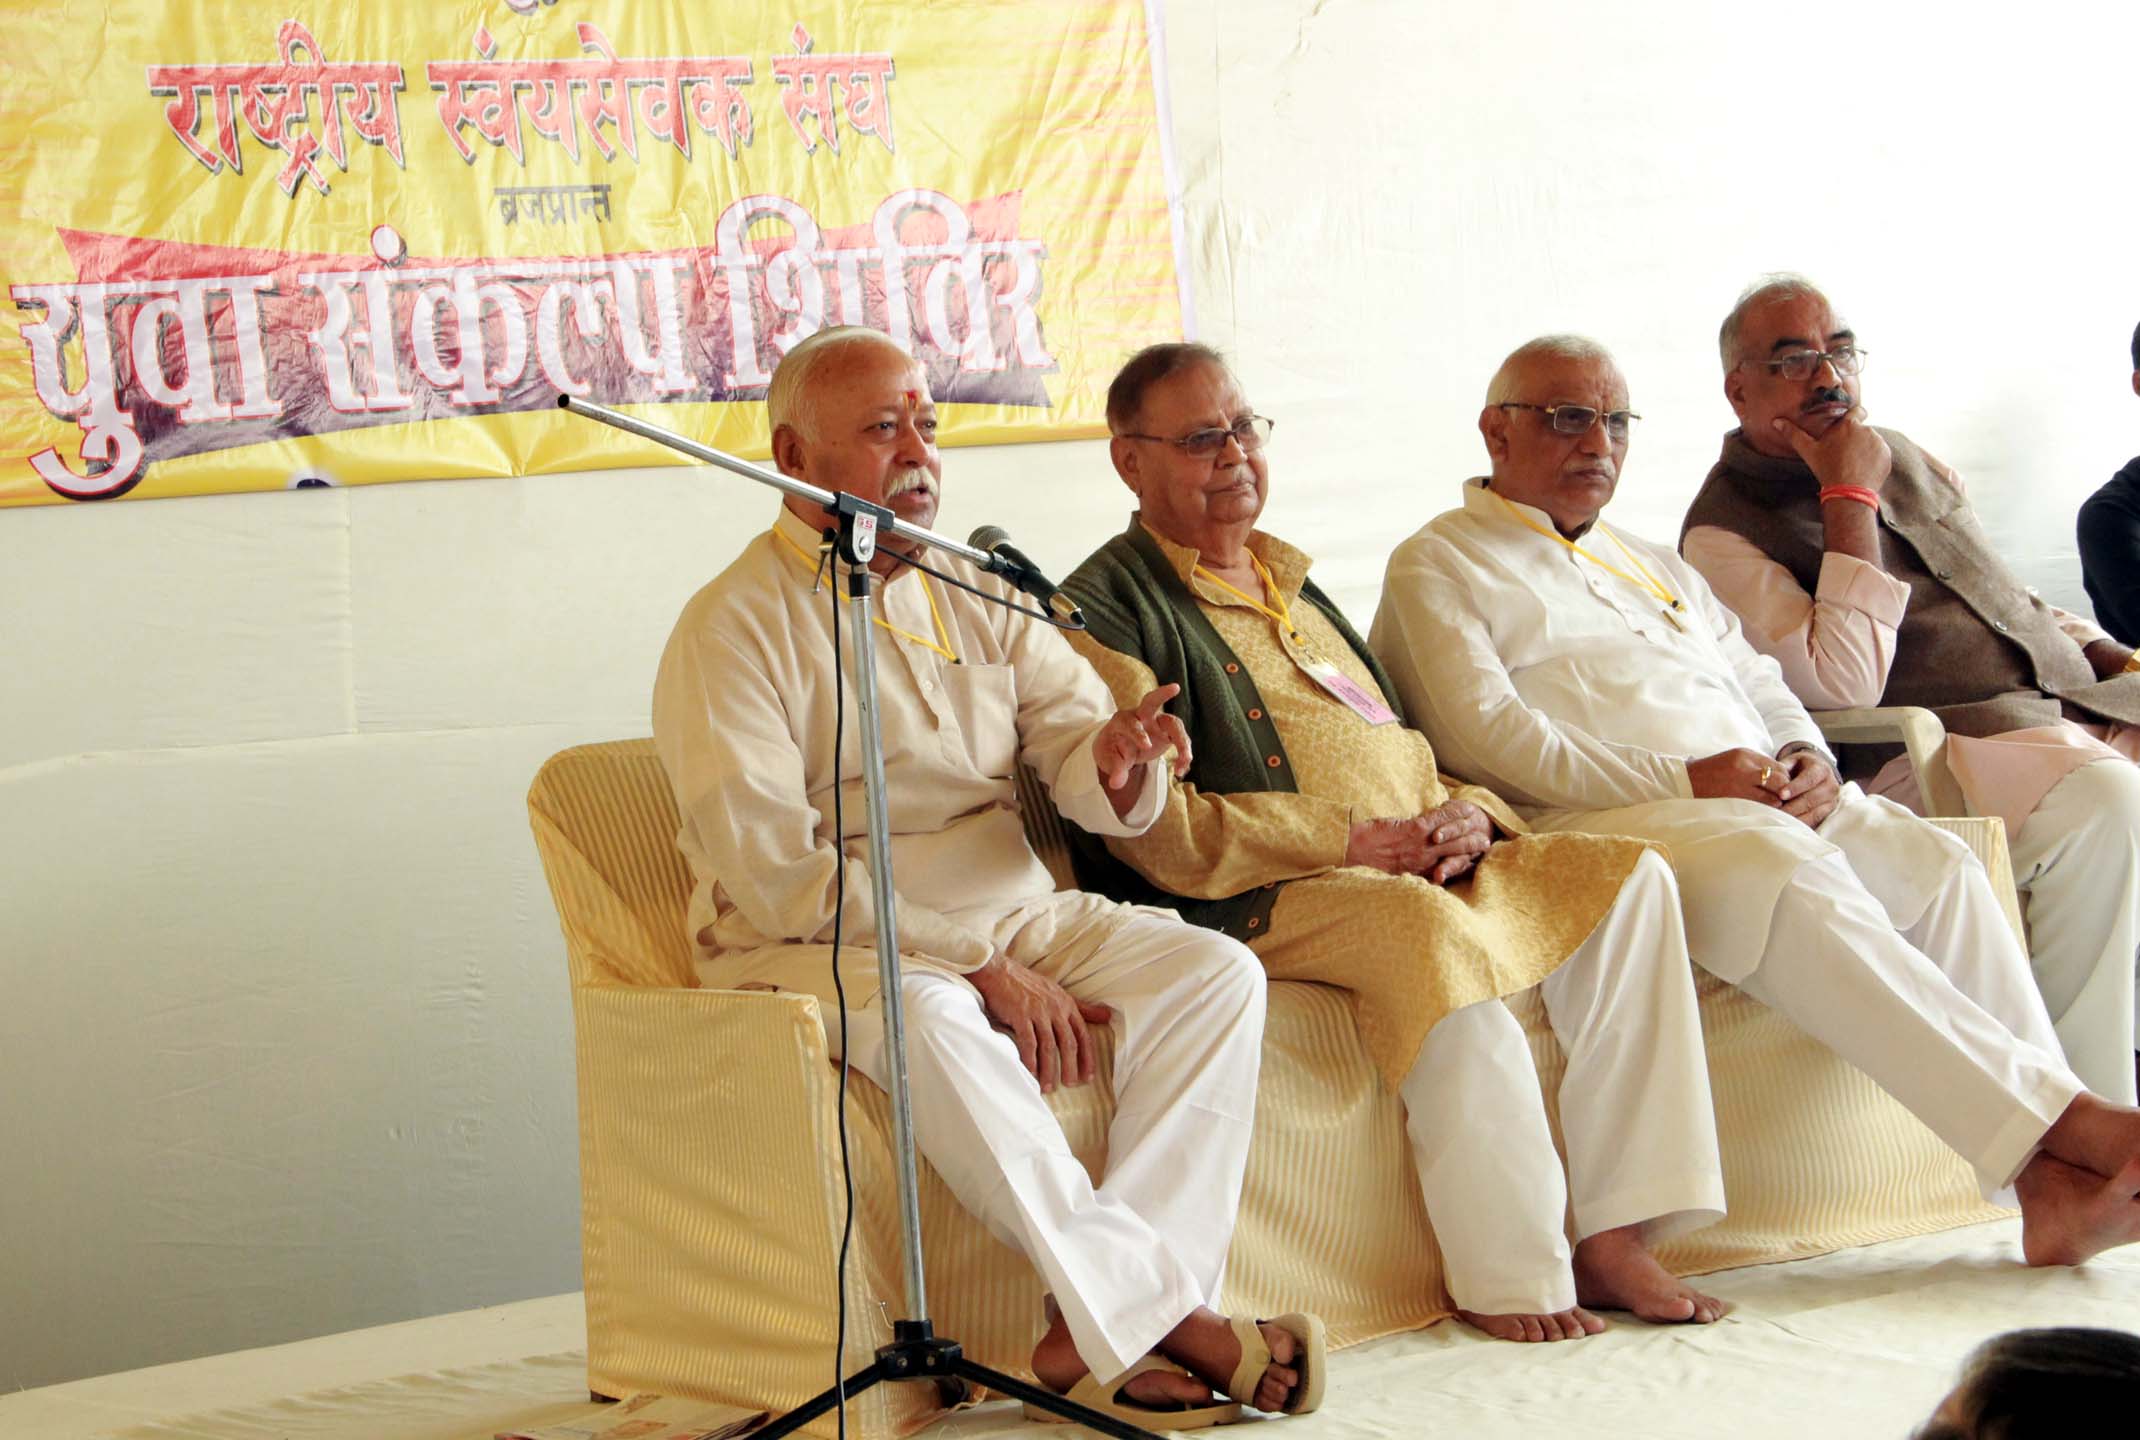 RSS Sarasanghachalak  Mohan Bhagwat at Yuva Sankalp Shivir